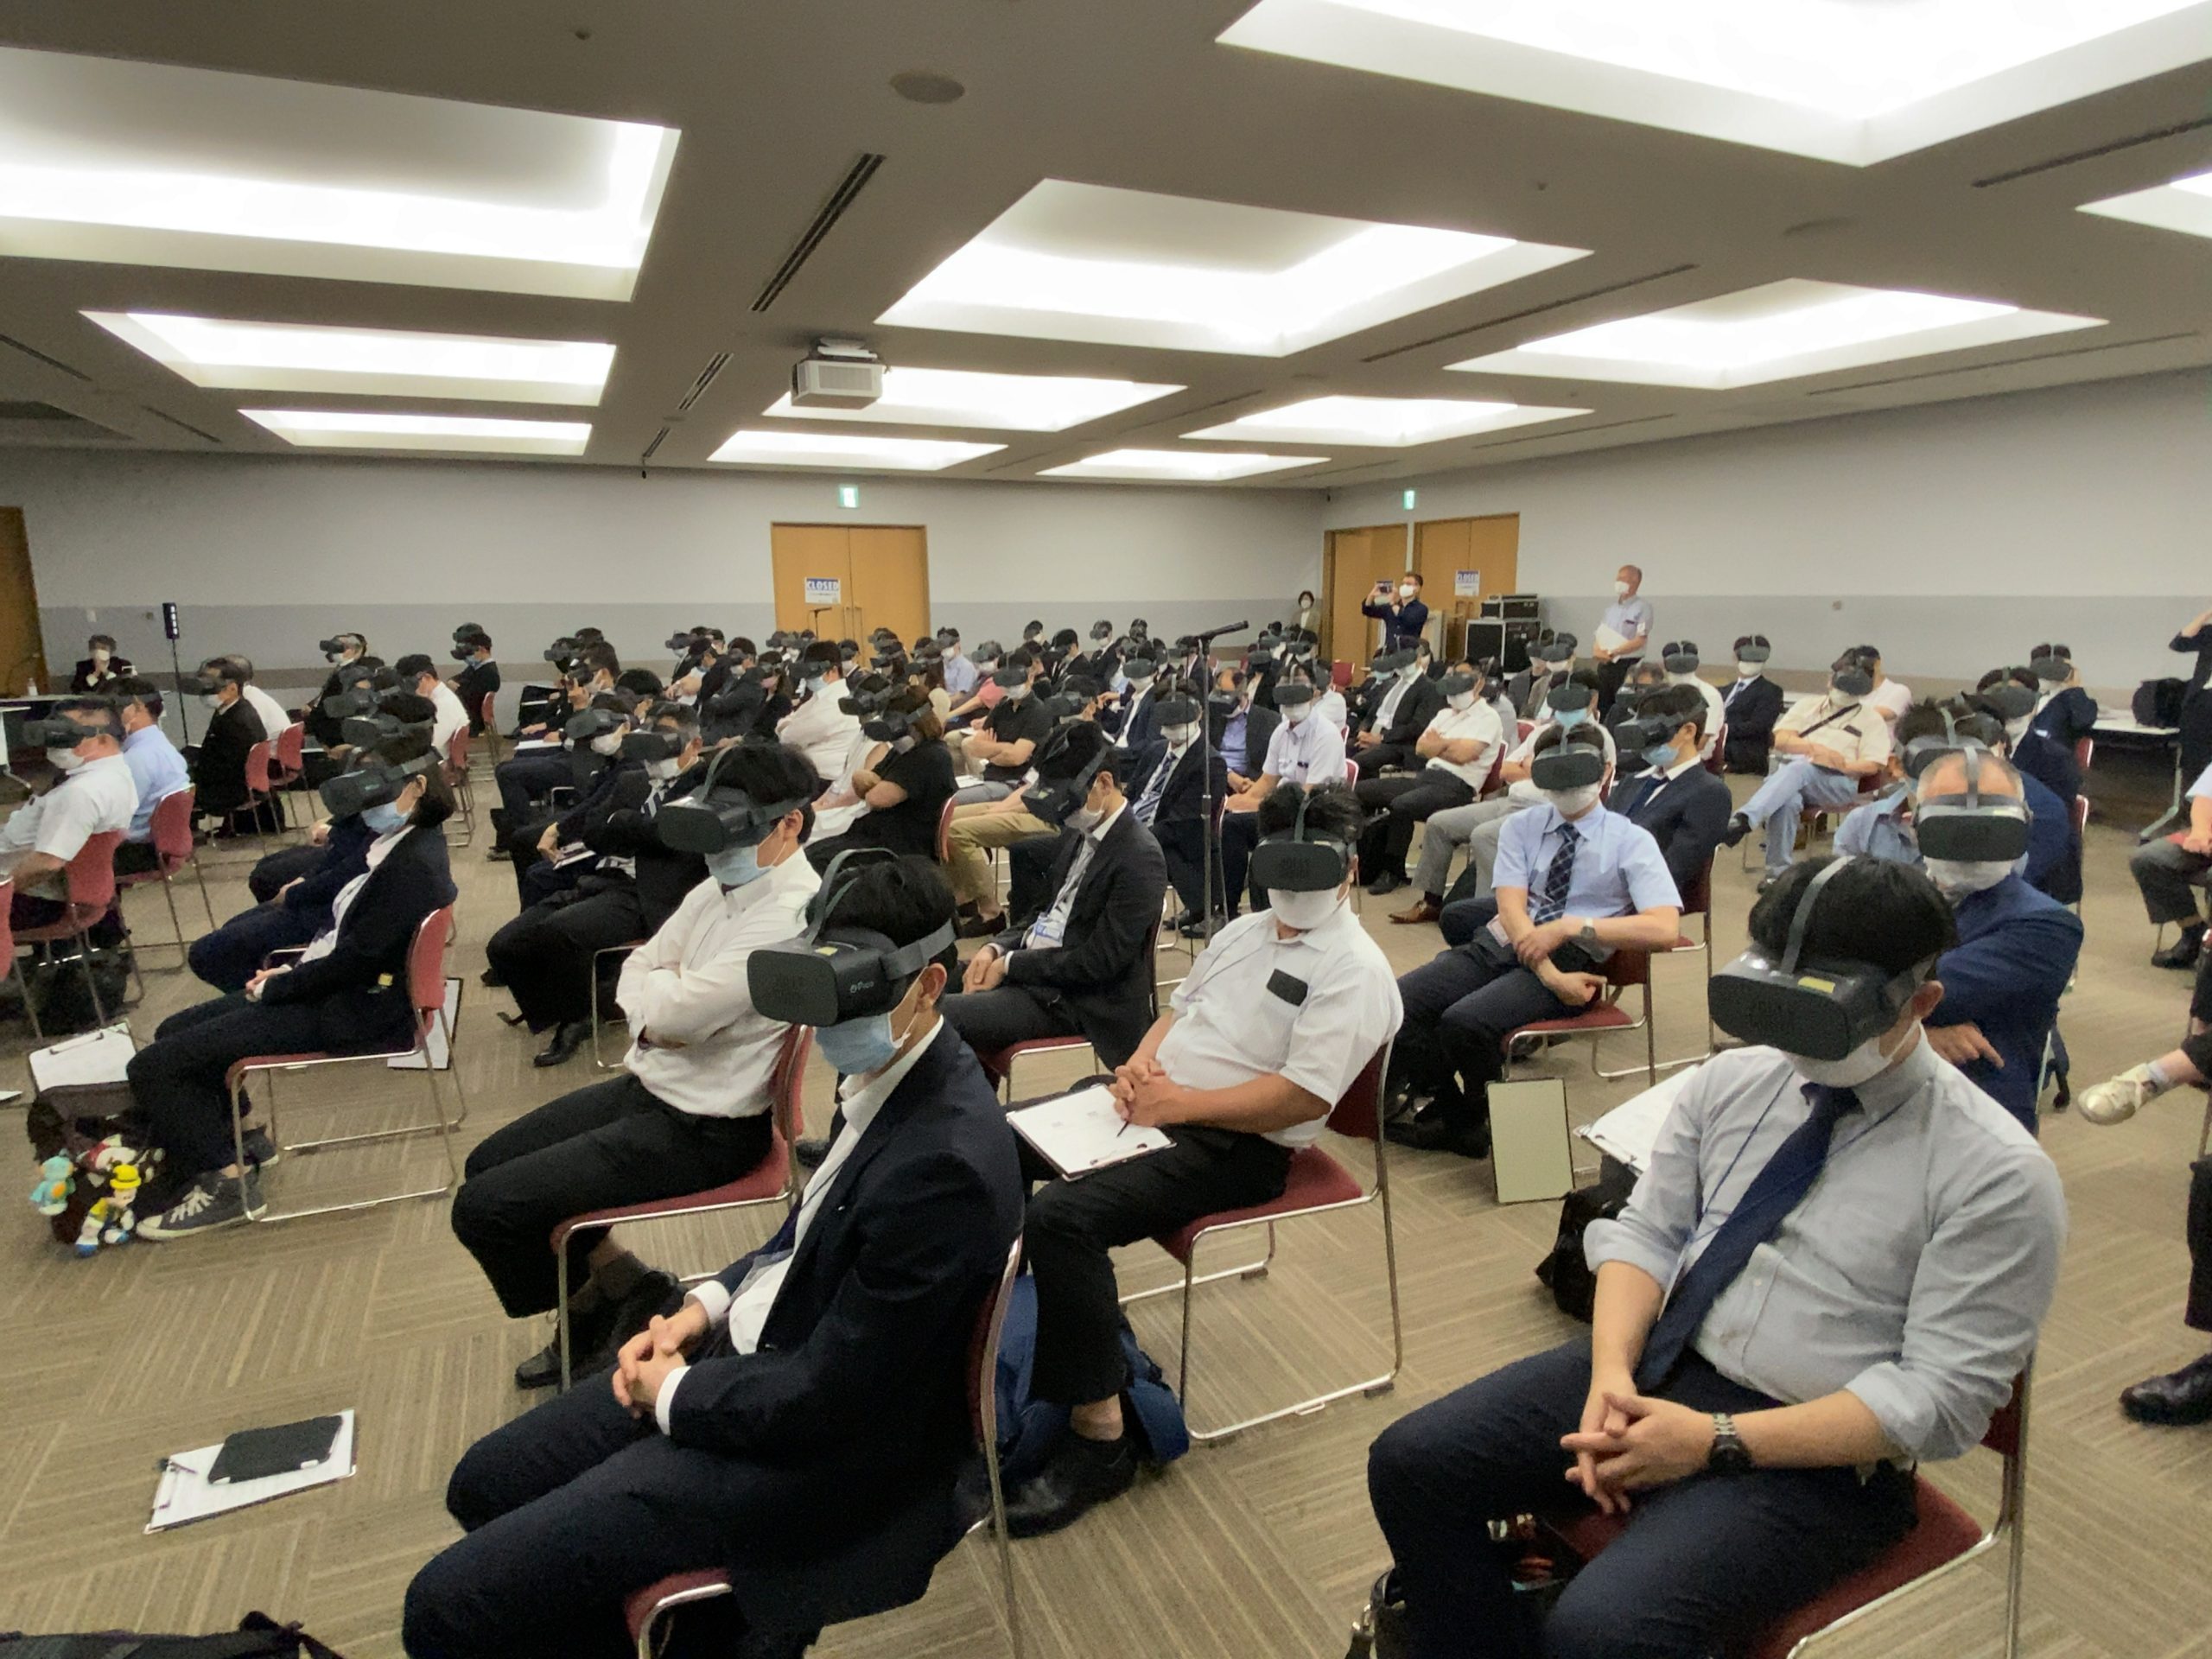 【イベントレポート】 医療業界初、VR講義が外科専門医認定の単位に！ 日本外傷学会にて100名の参加者に向け、3名の医師がVR映像を巧みに扱った講義を実施